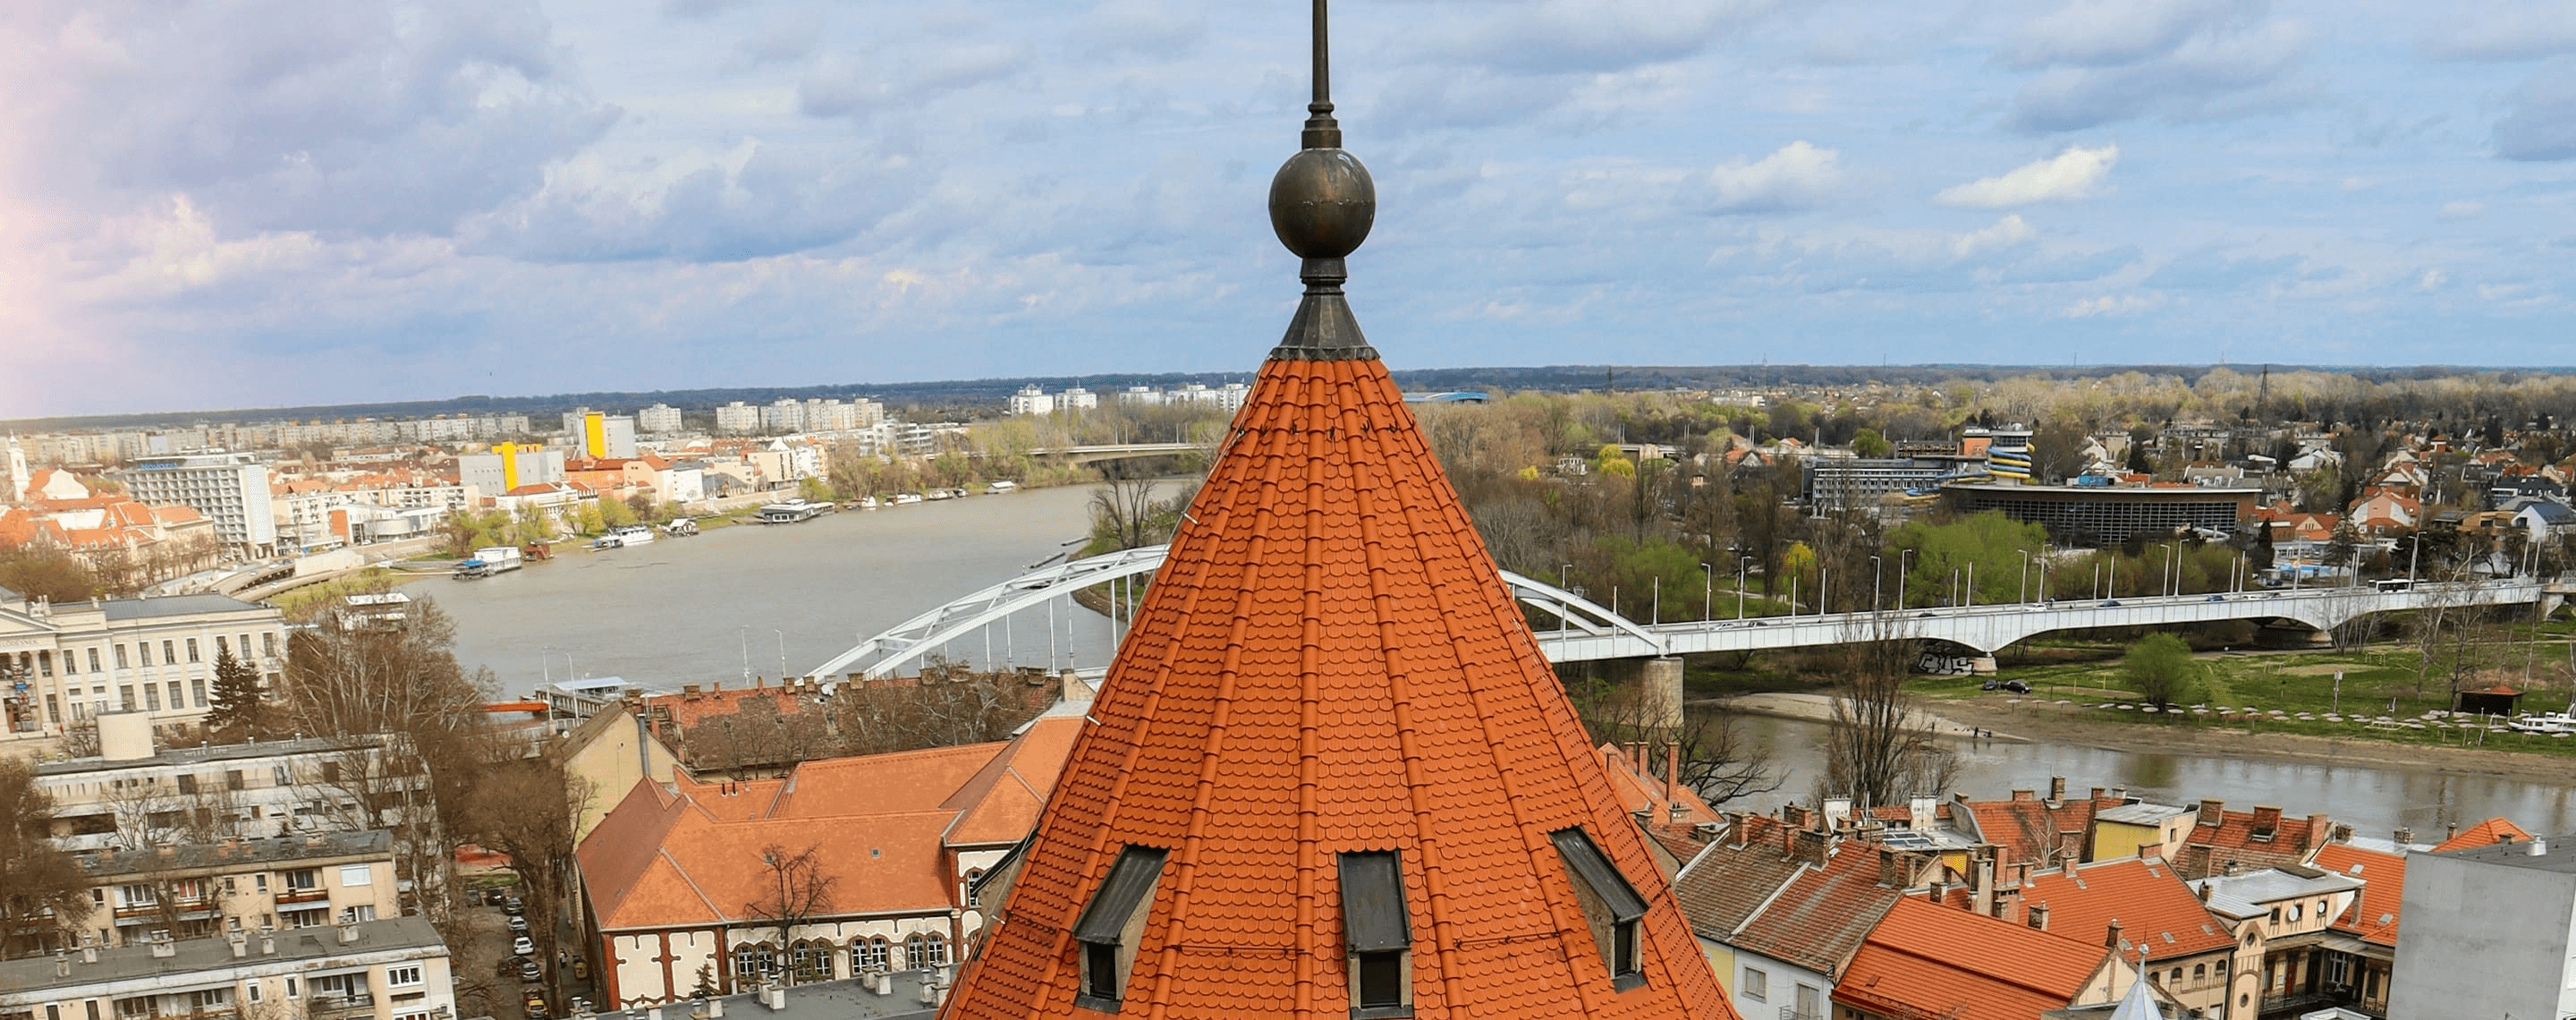 Blick auf Kirchturm und Stadt Szeged, Ungarn